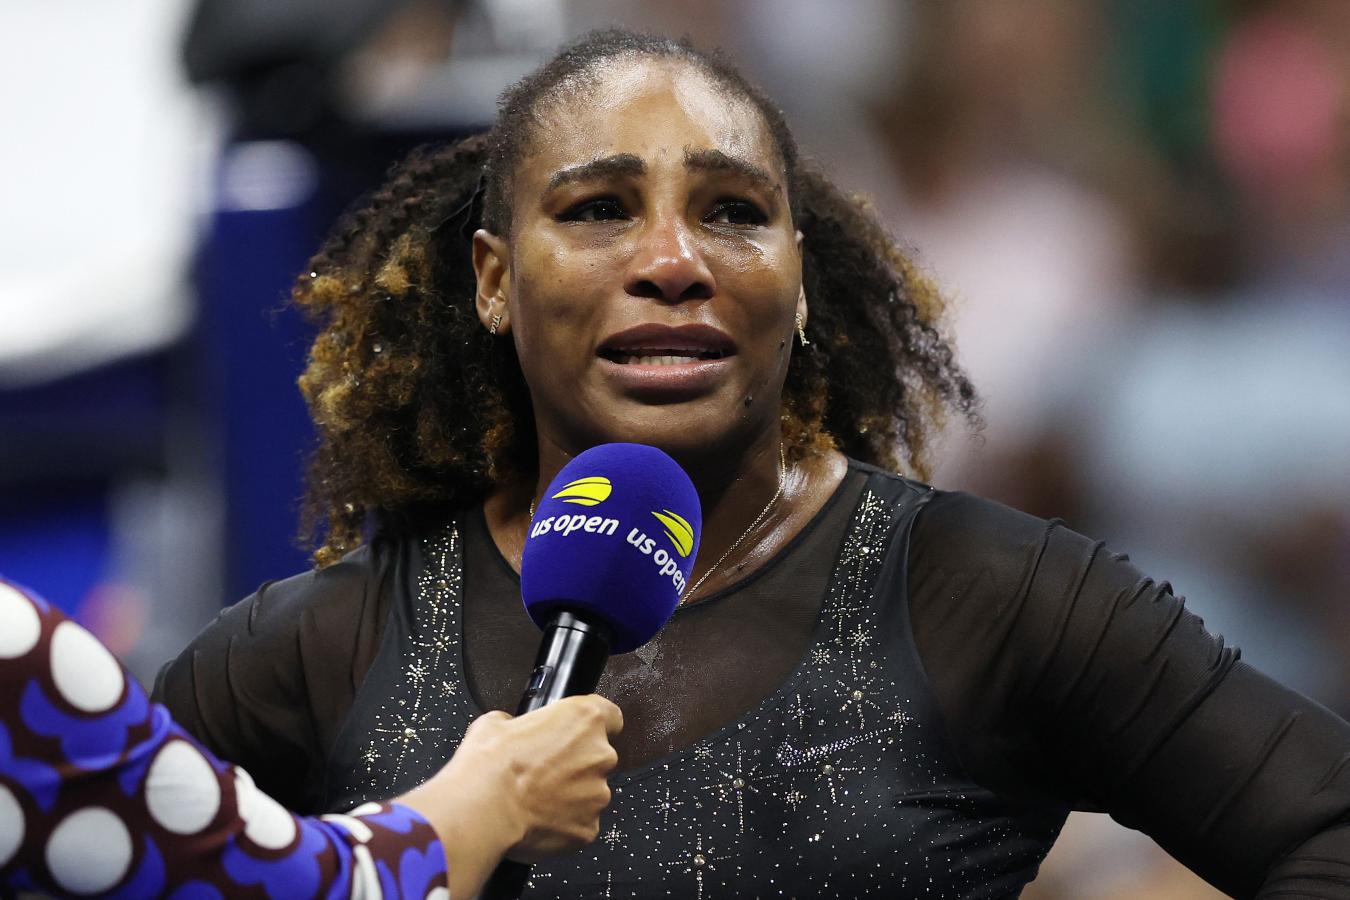 Imagen 367 triunfos, 73 títulos, 23 Grand Slams. Se retira Serena Williams, es el fin de una era (ELSA / GETTY IMAGES NORTH AMERICA / GETTY IMAGES VIA AFP)